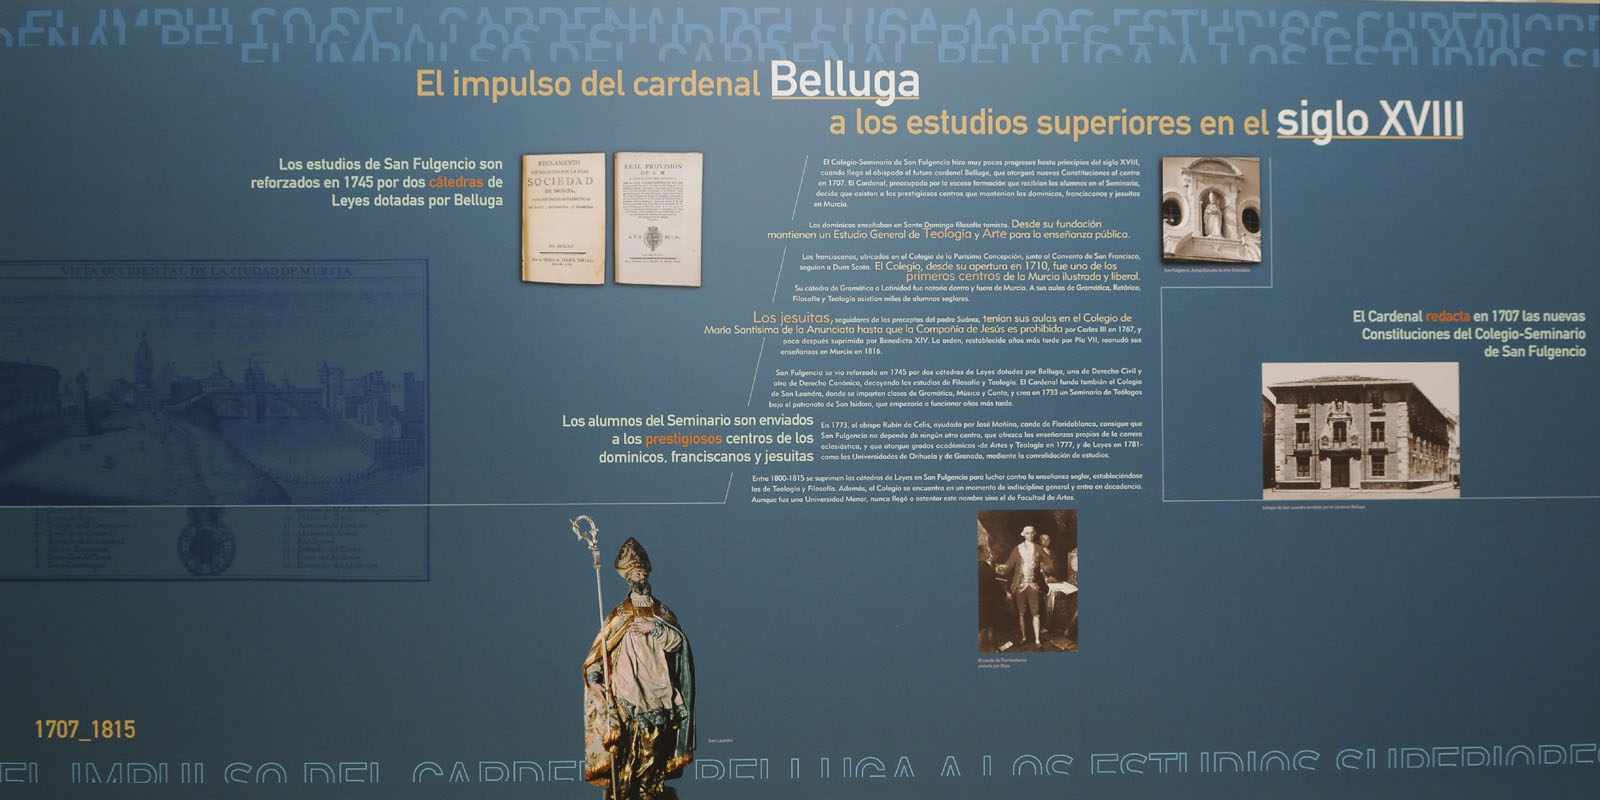 El Cardenal Belluga y los estudios superiores en el siglo XVIII